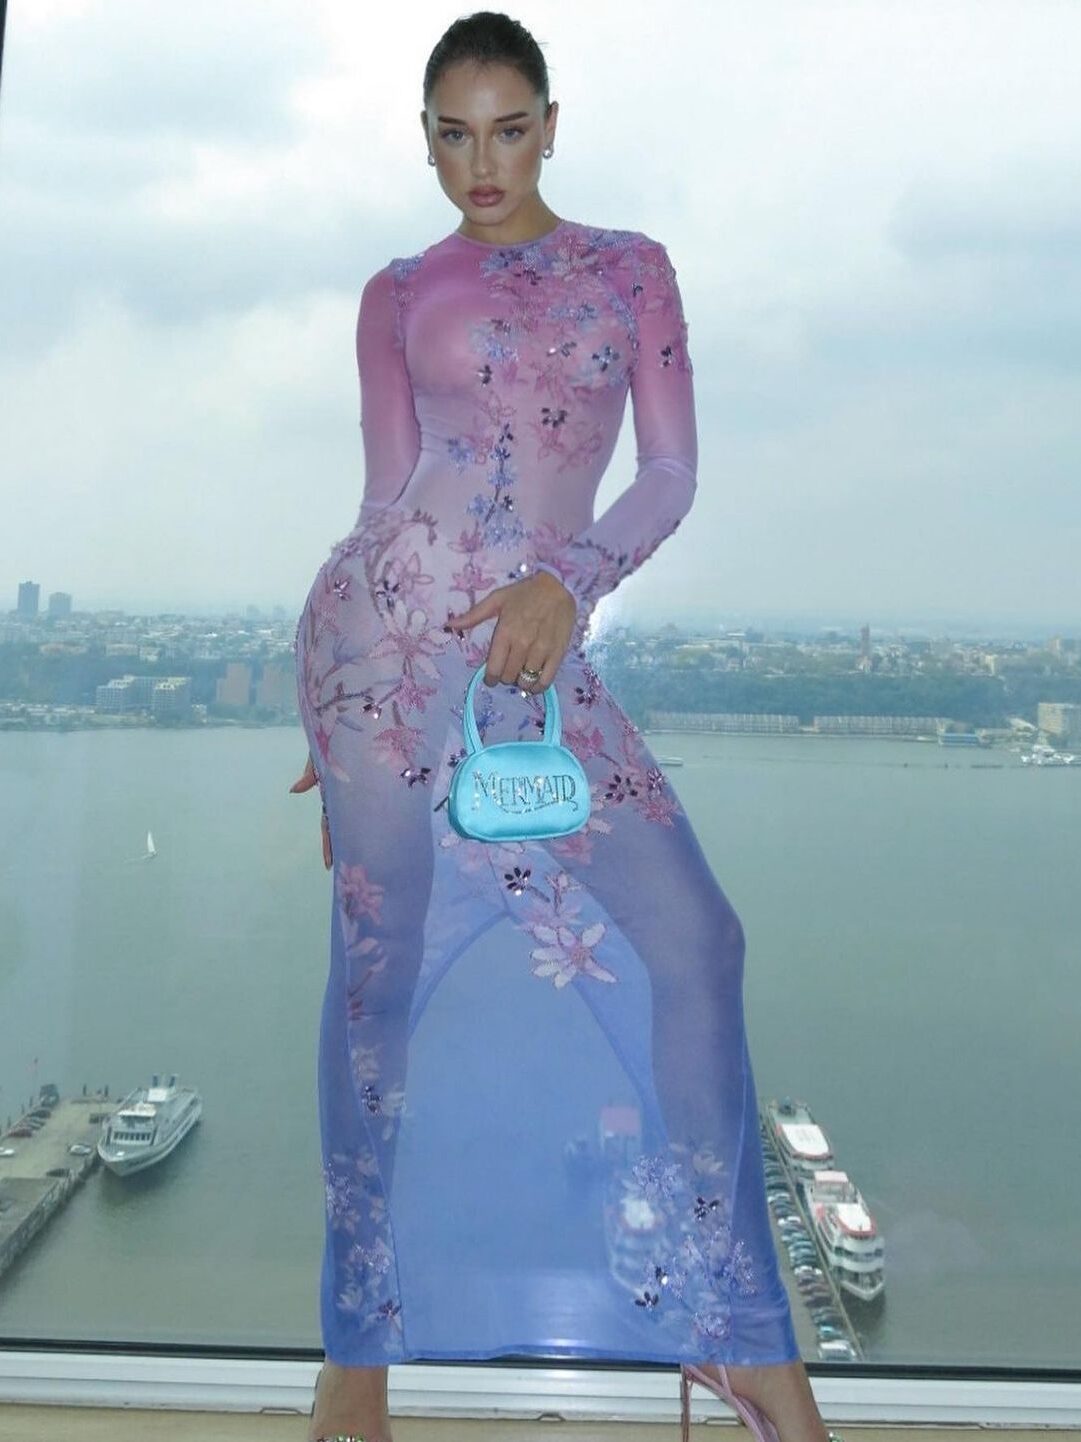 Malu Borges usando um vestido transparente nas cores pastéis em degradê do rosa/roxo para o azul, com bordados de flores. Ainda, acompanha o look uma bolsa em cetim azul escrito "mermaid" em lantejoulas.